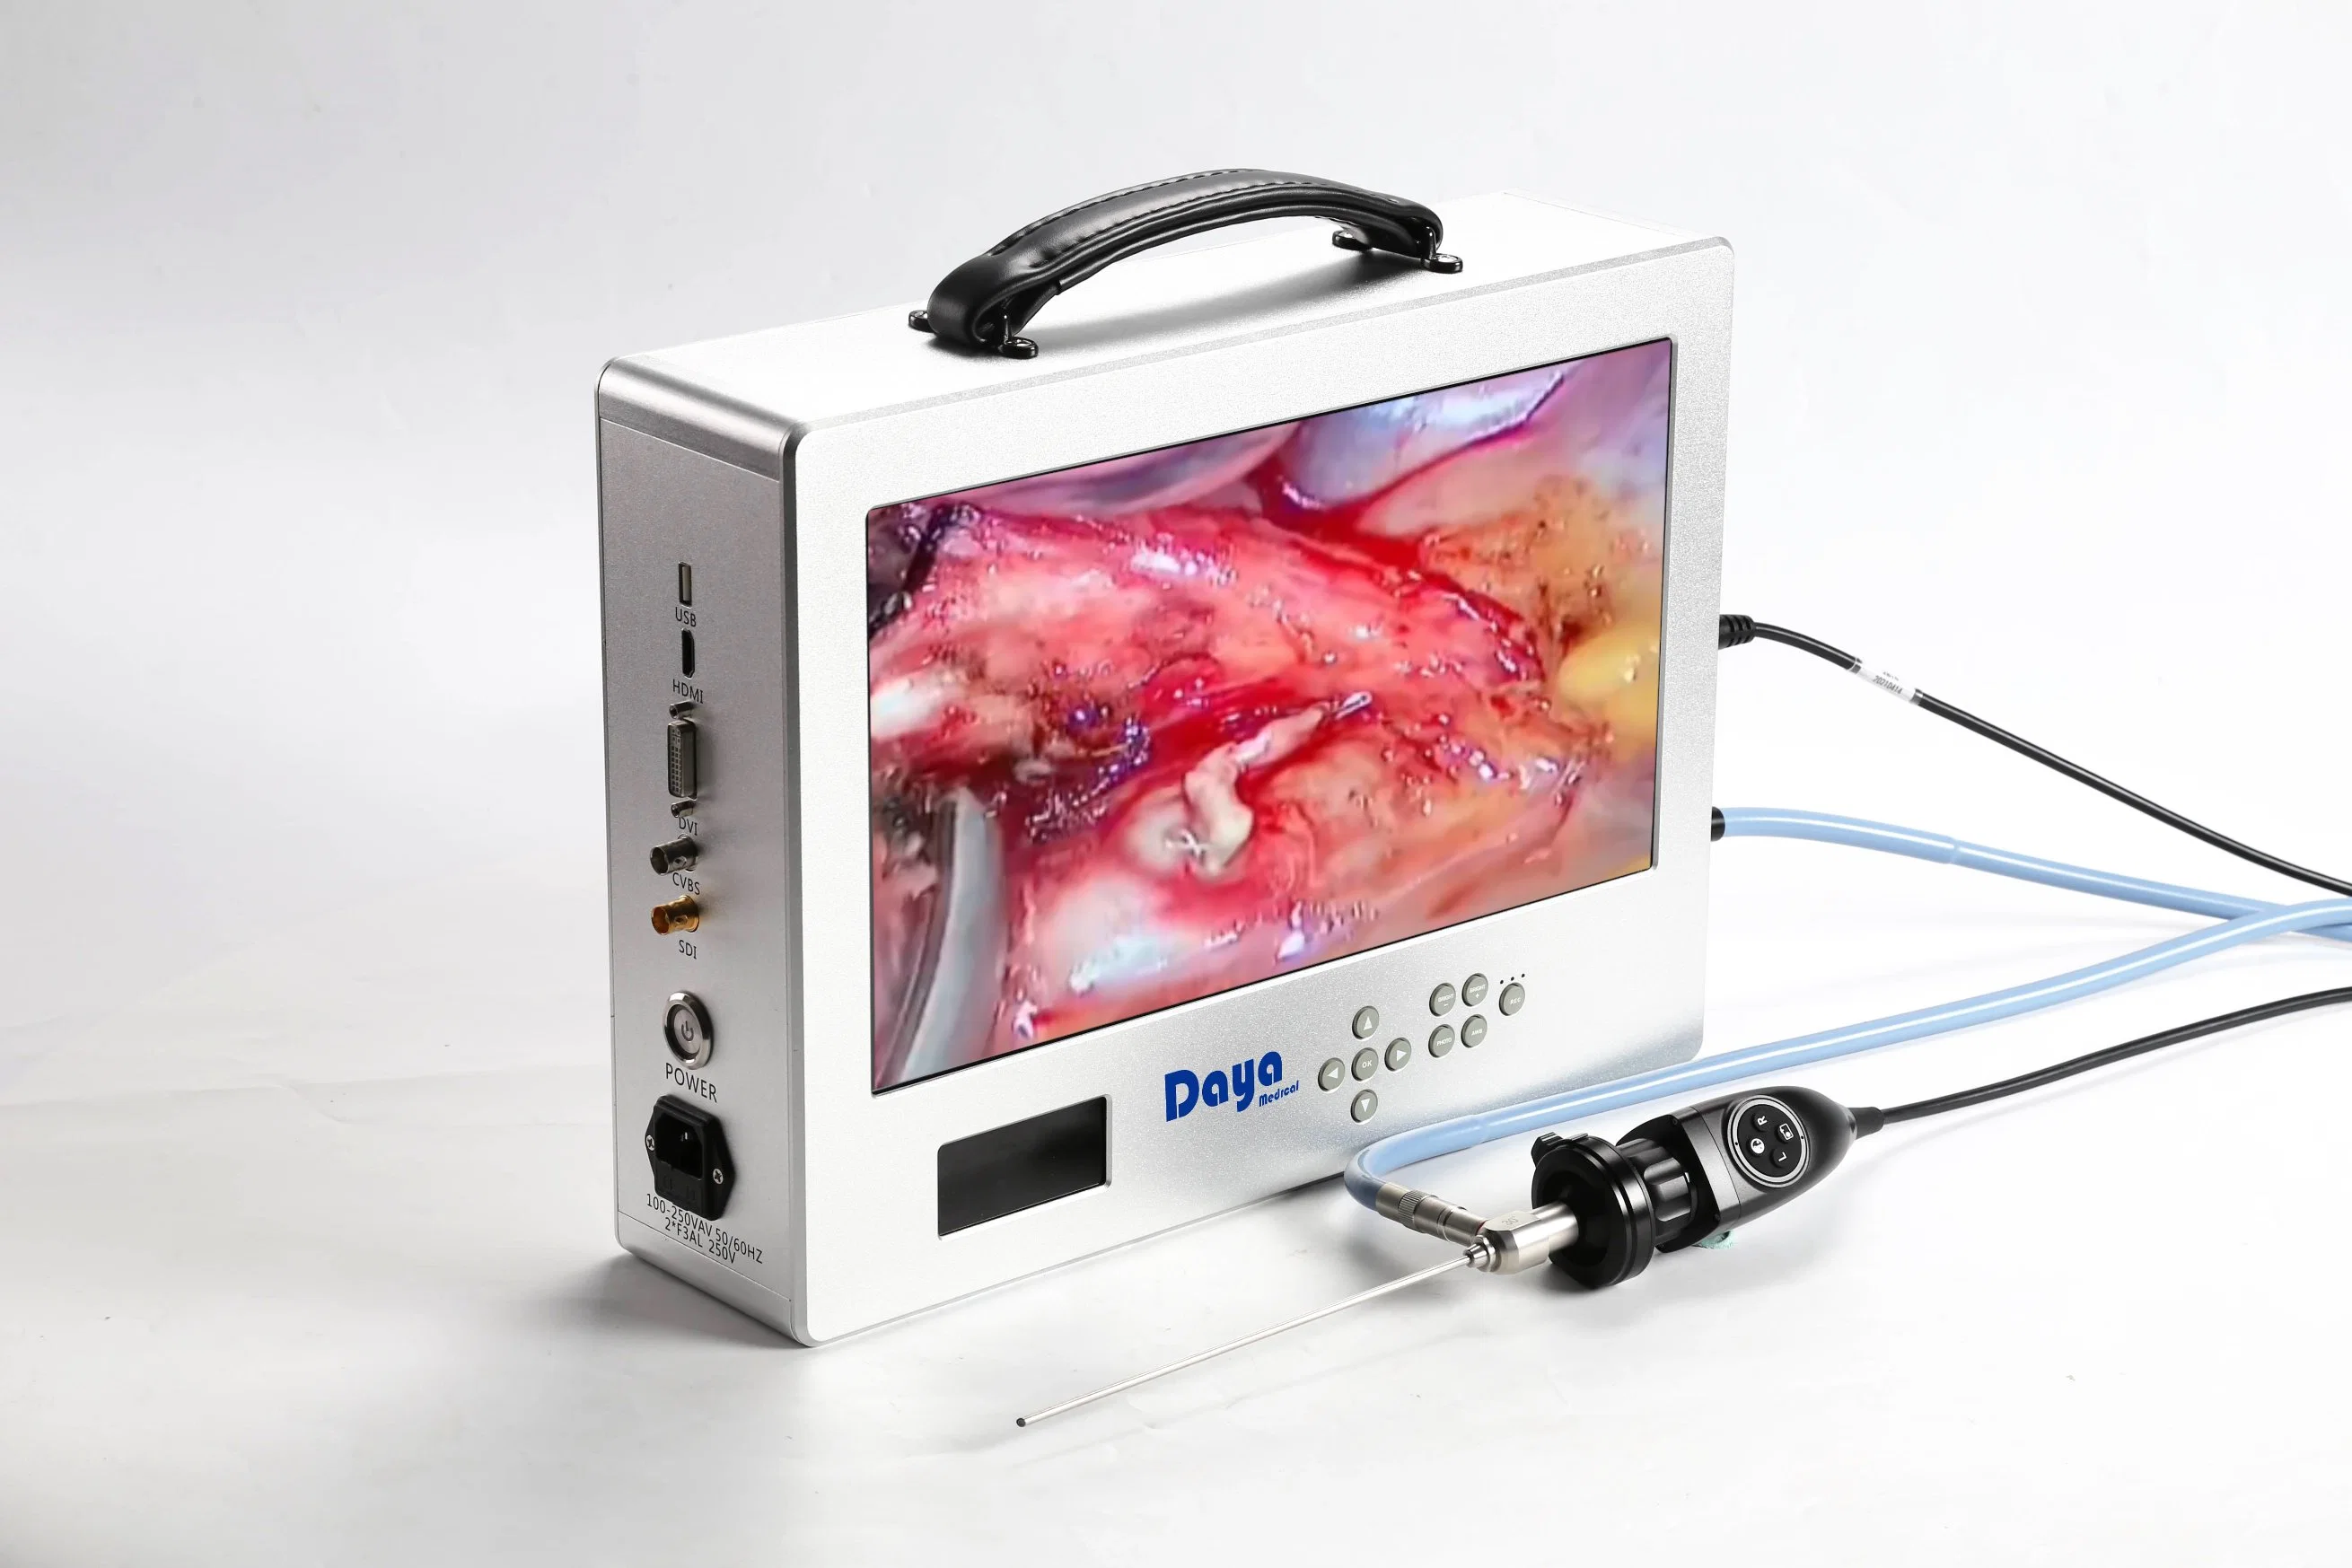 Hochwertige Ent Chirurgie Kamera Inspektion Kamera Endoskop System Medical Monitor für Endoskopie